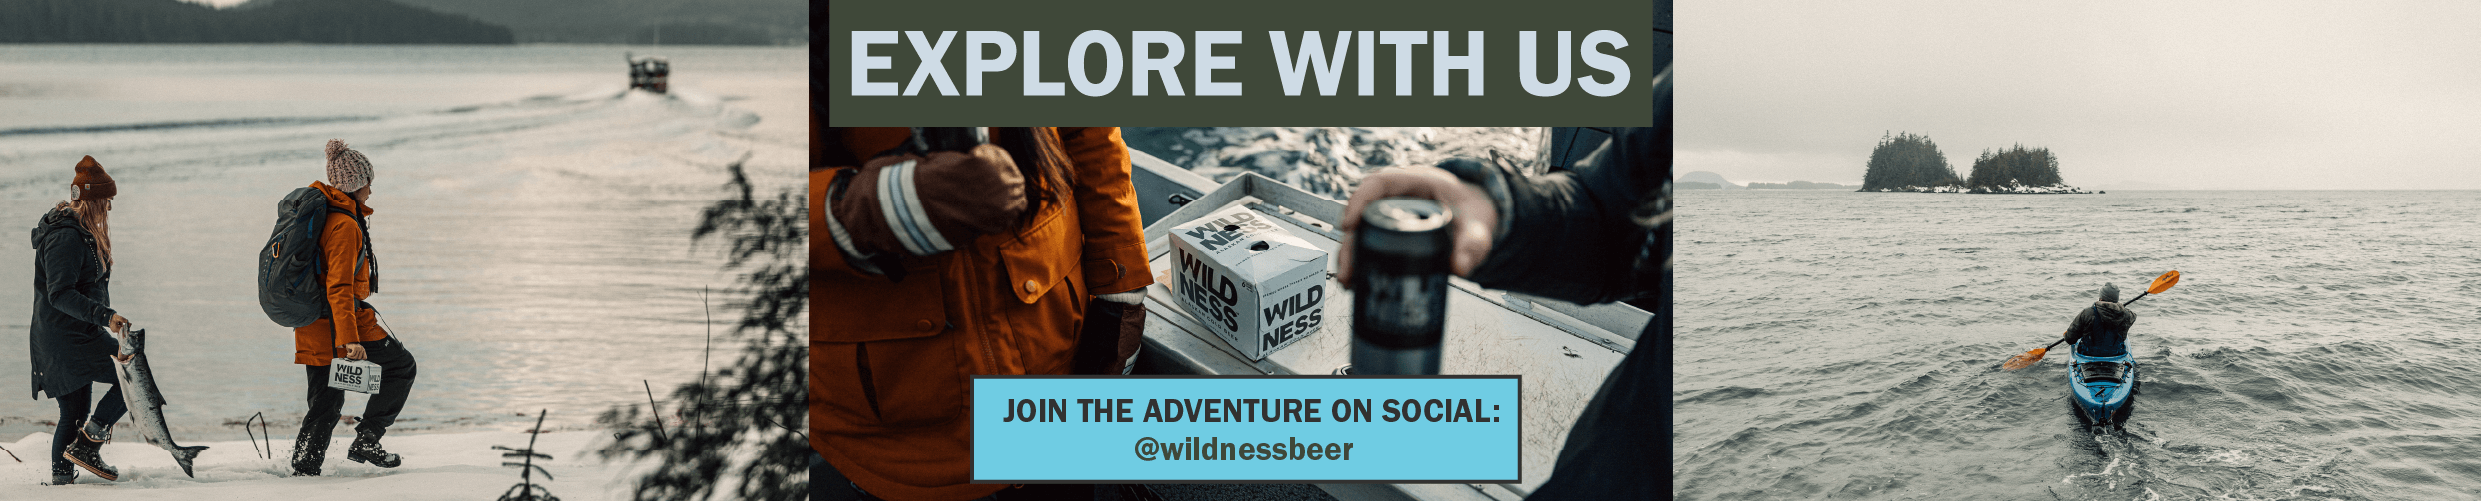 WILDNESS beer Instagram